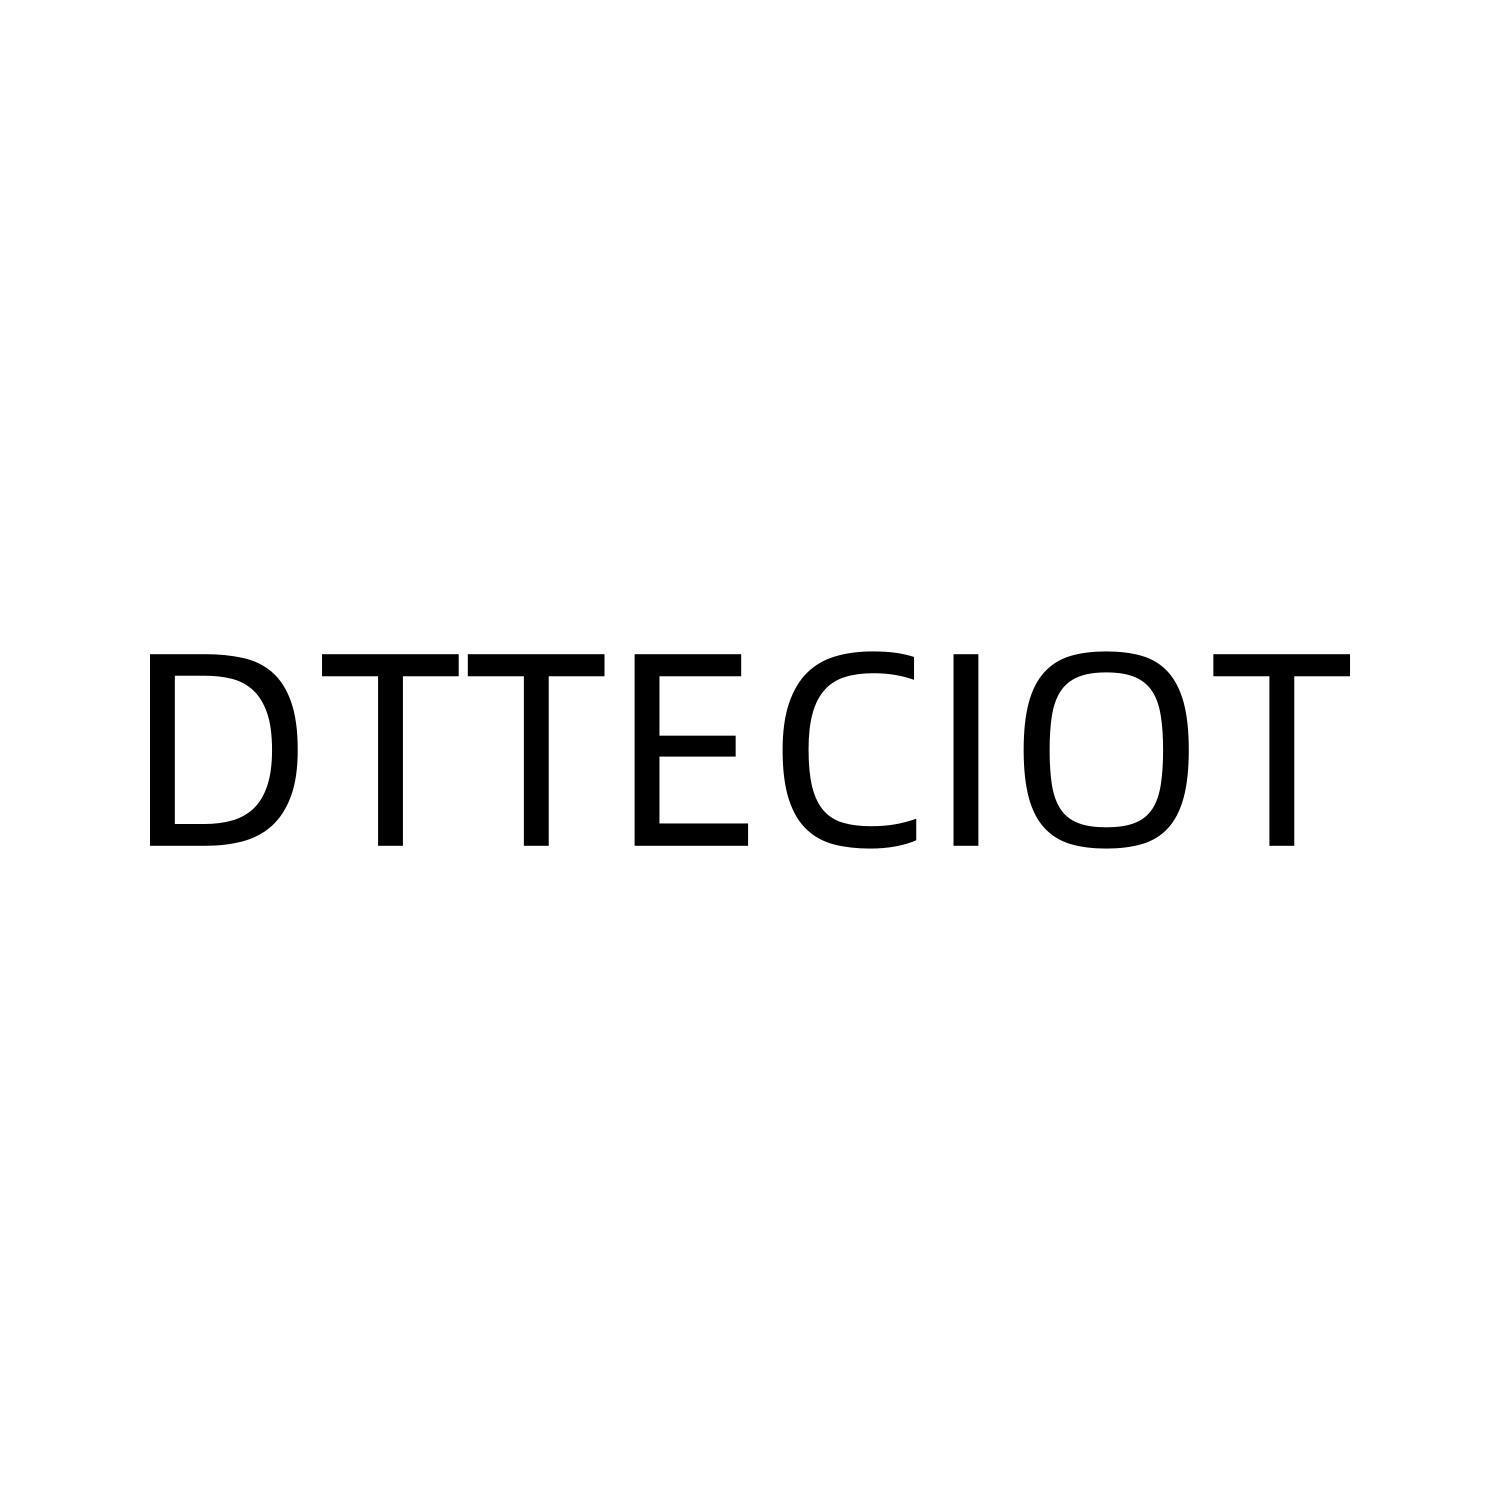 DTTECIOT